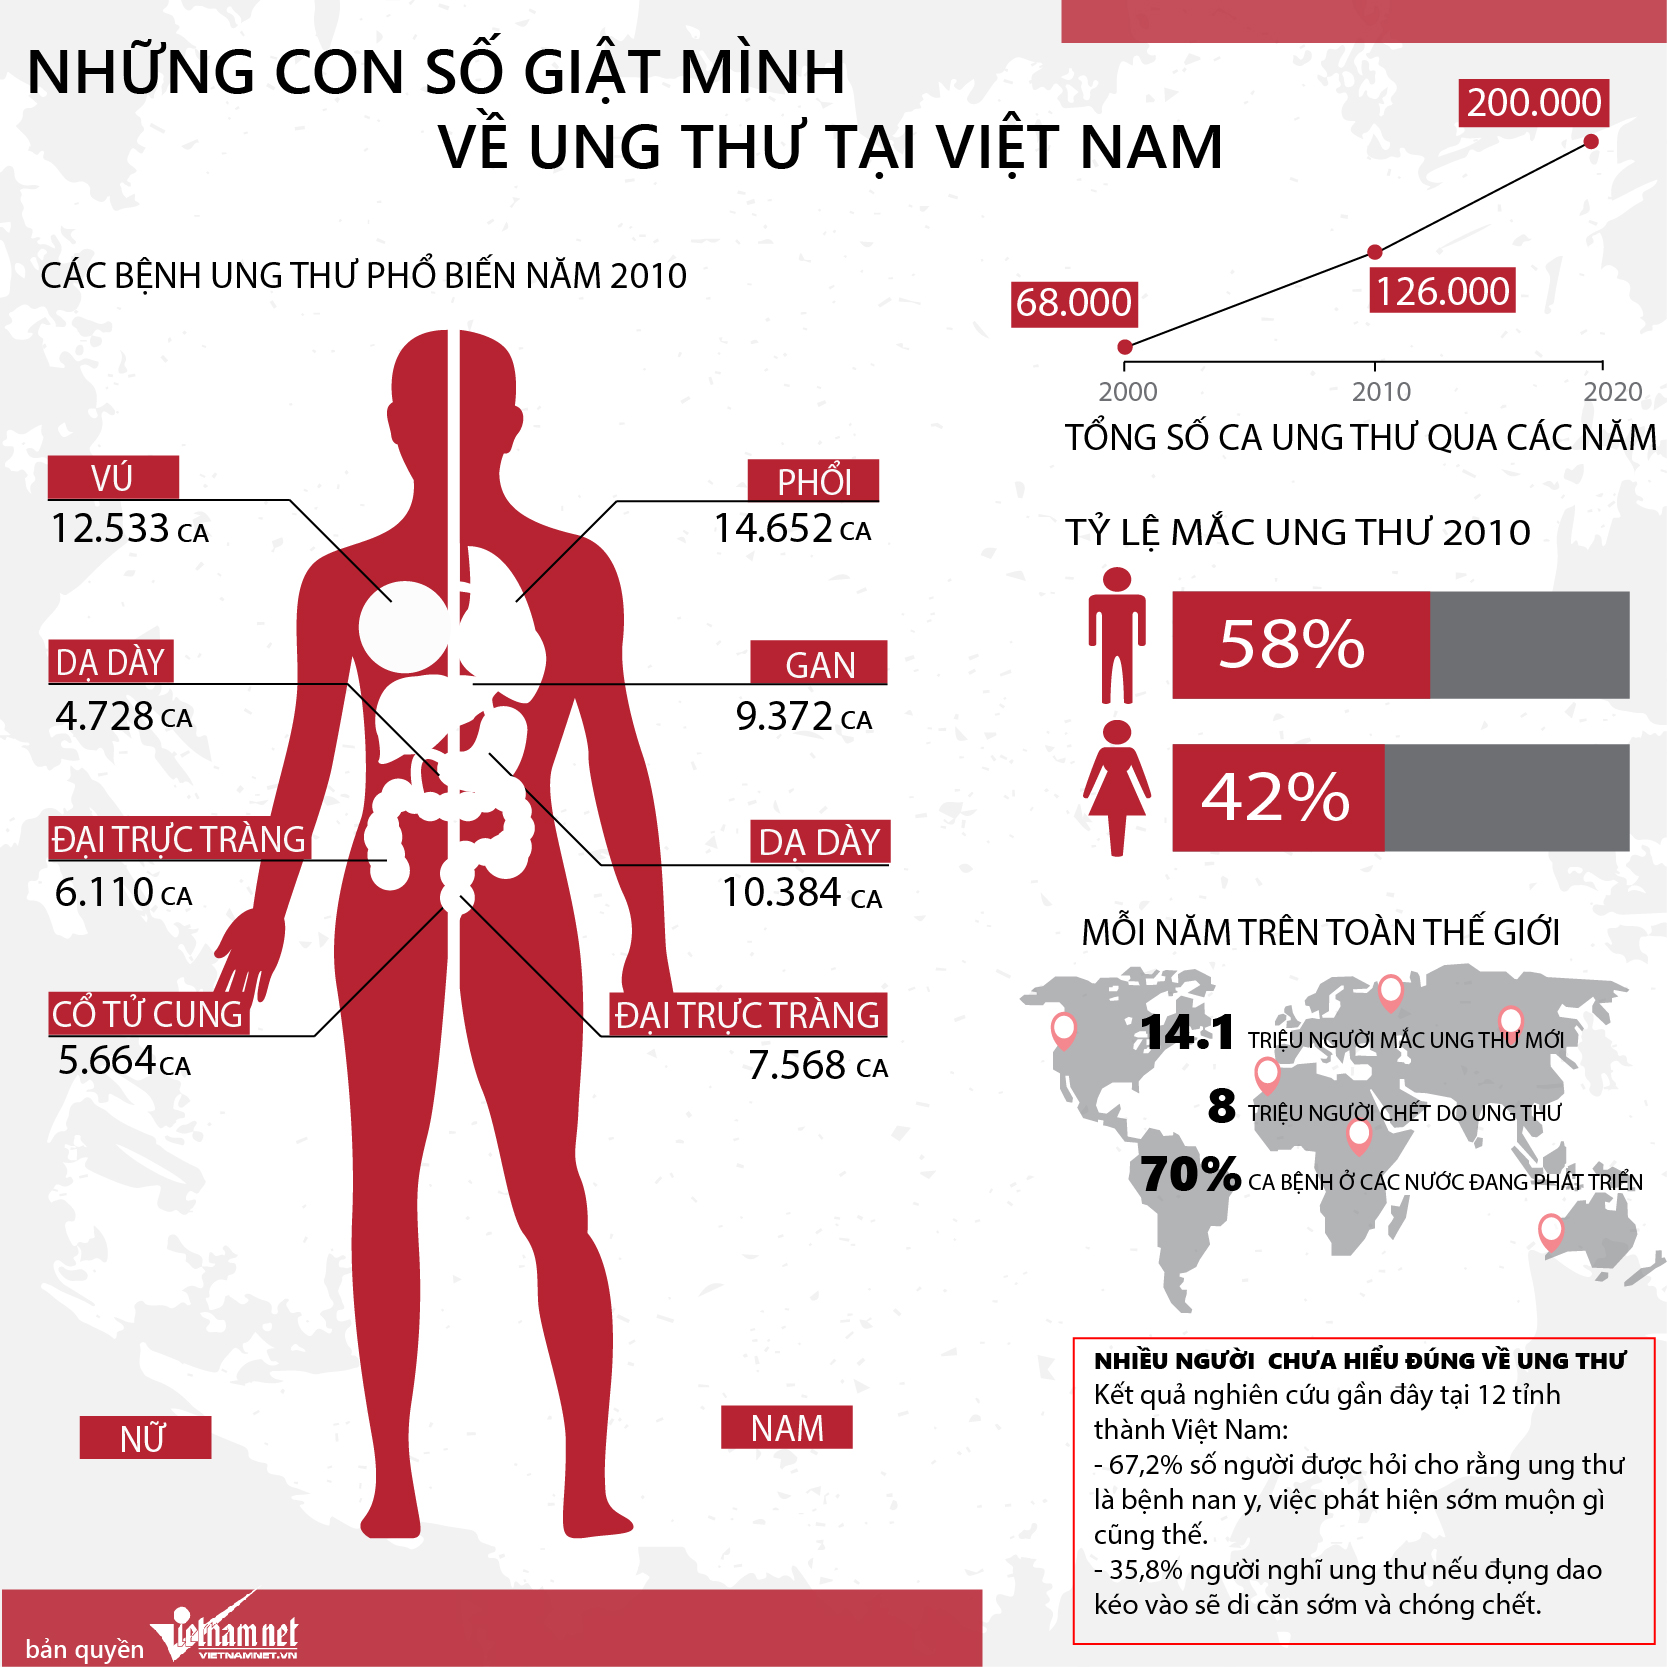 Tỉ lệ ung thư ở Việt Nam những năm gần đây ngày càng gia tăng